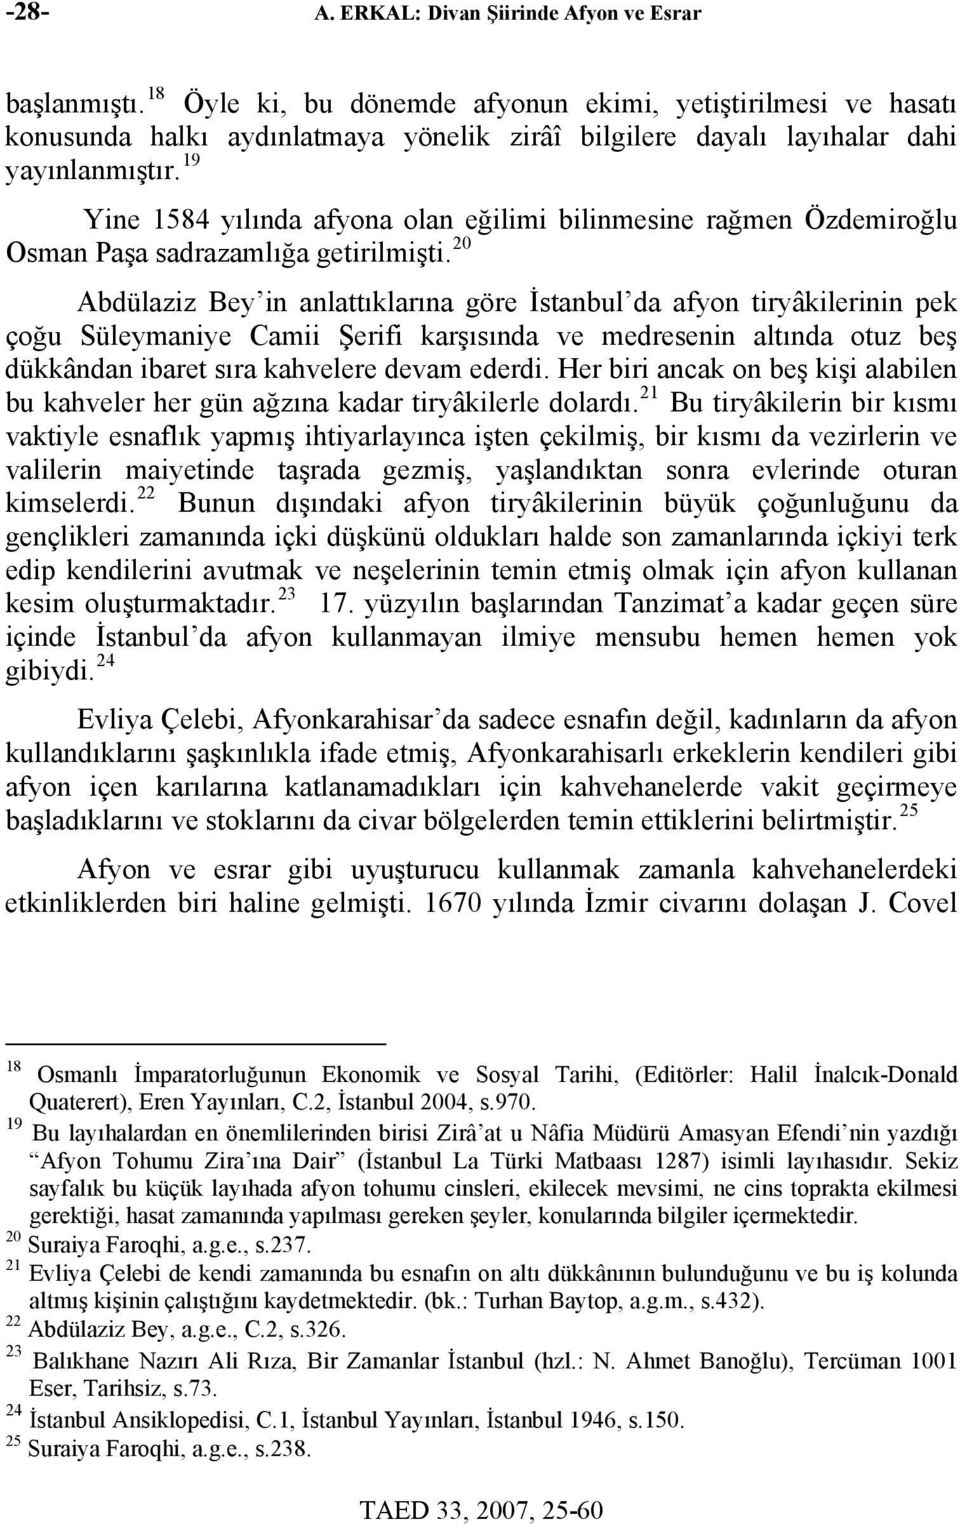 19 Yine 1584 yılında afyona olan eğilimi bilinmesine rağmen Özdemiroğlu Osman Paşa sadrazamlığa getirilmişti.